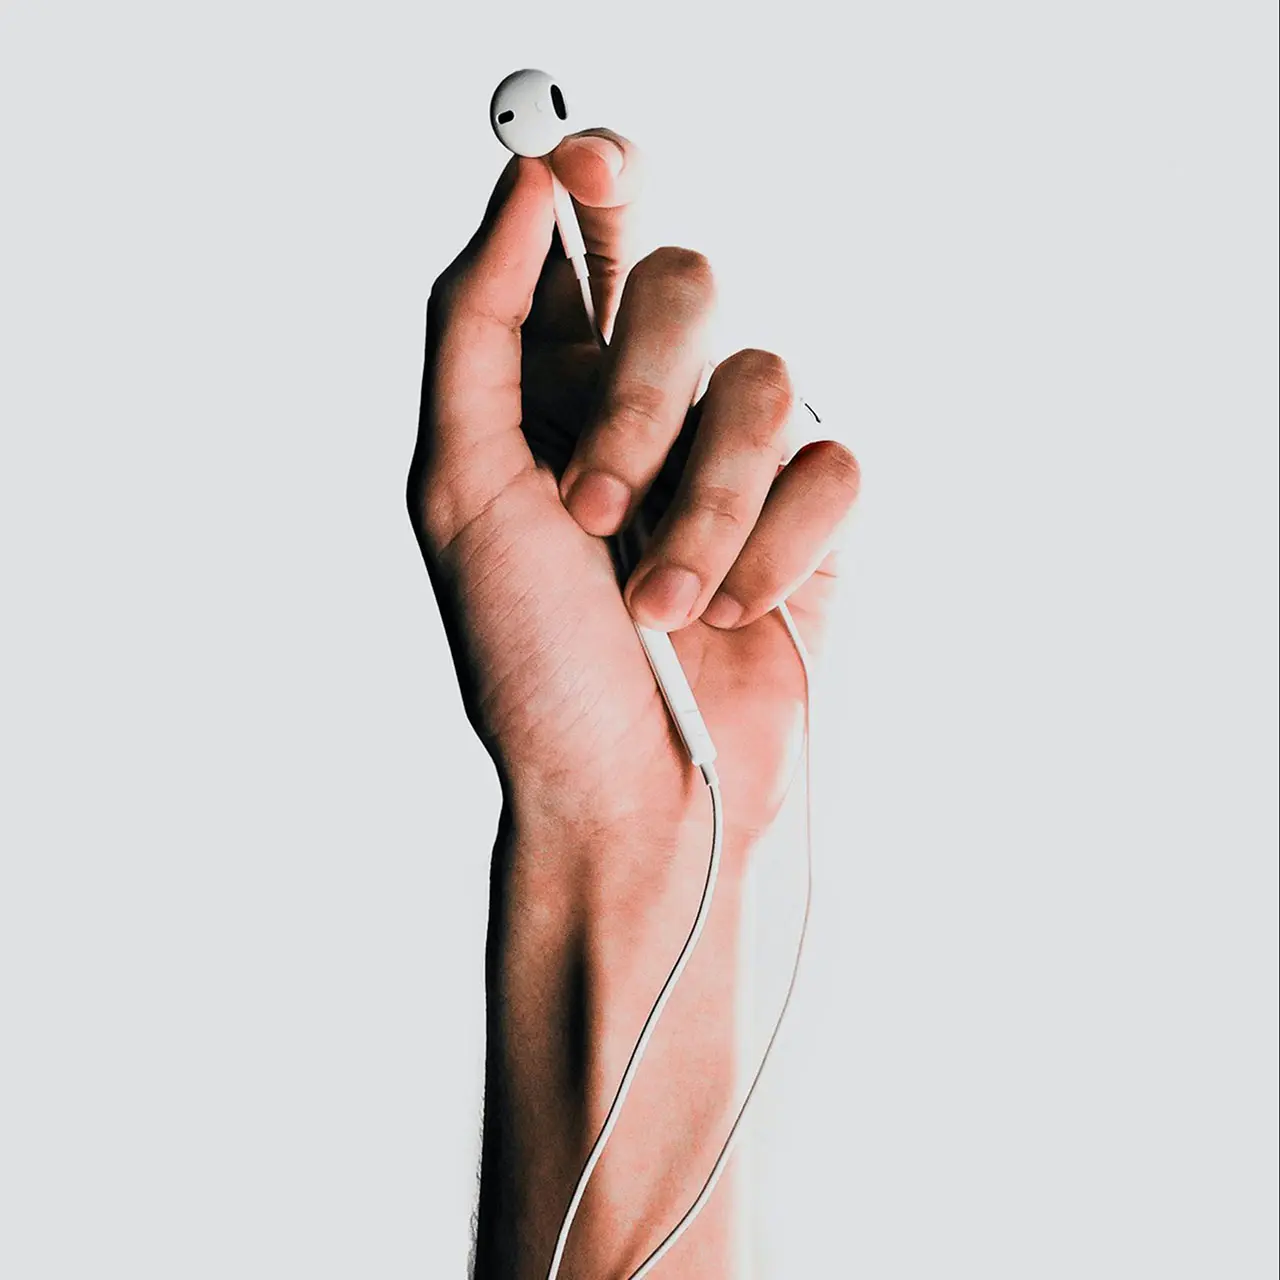 hand holding white apple earphones. White background.